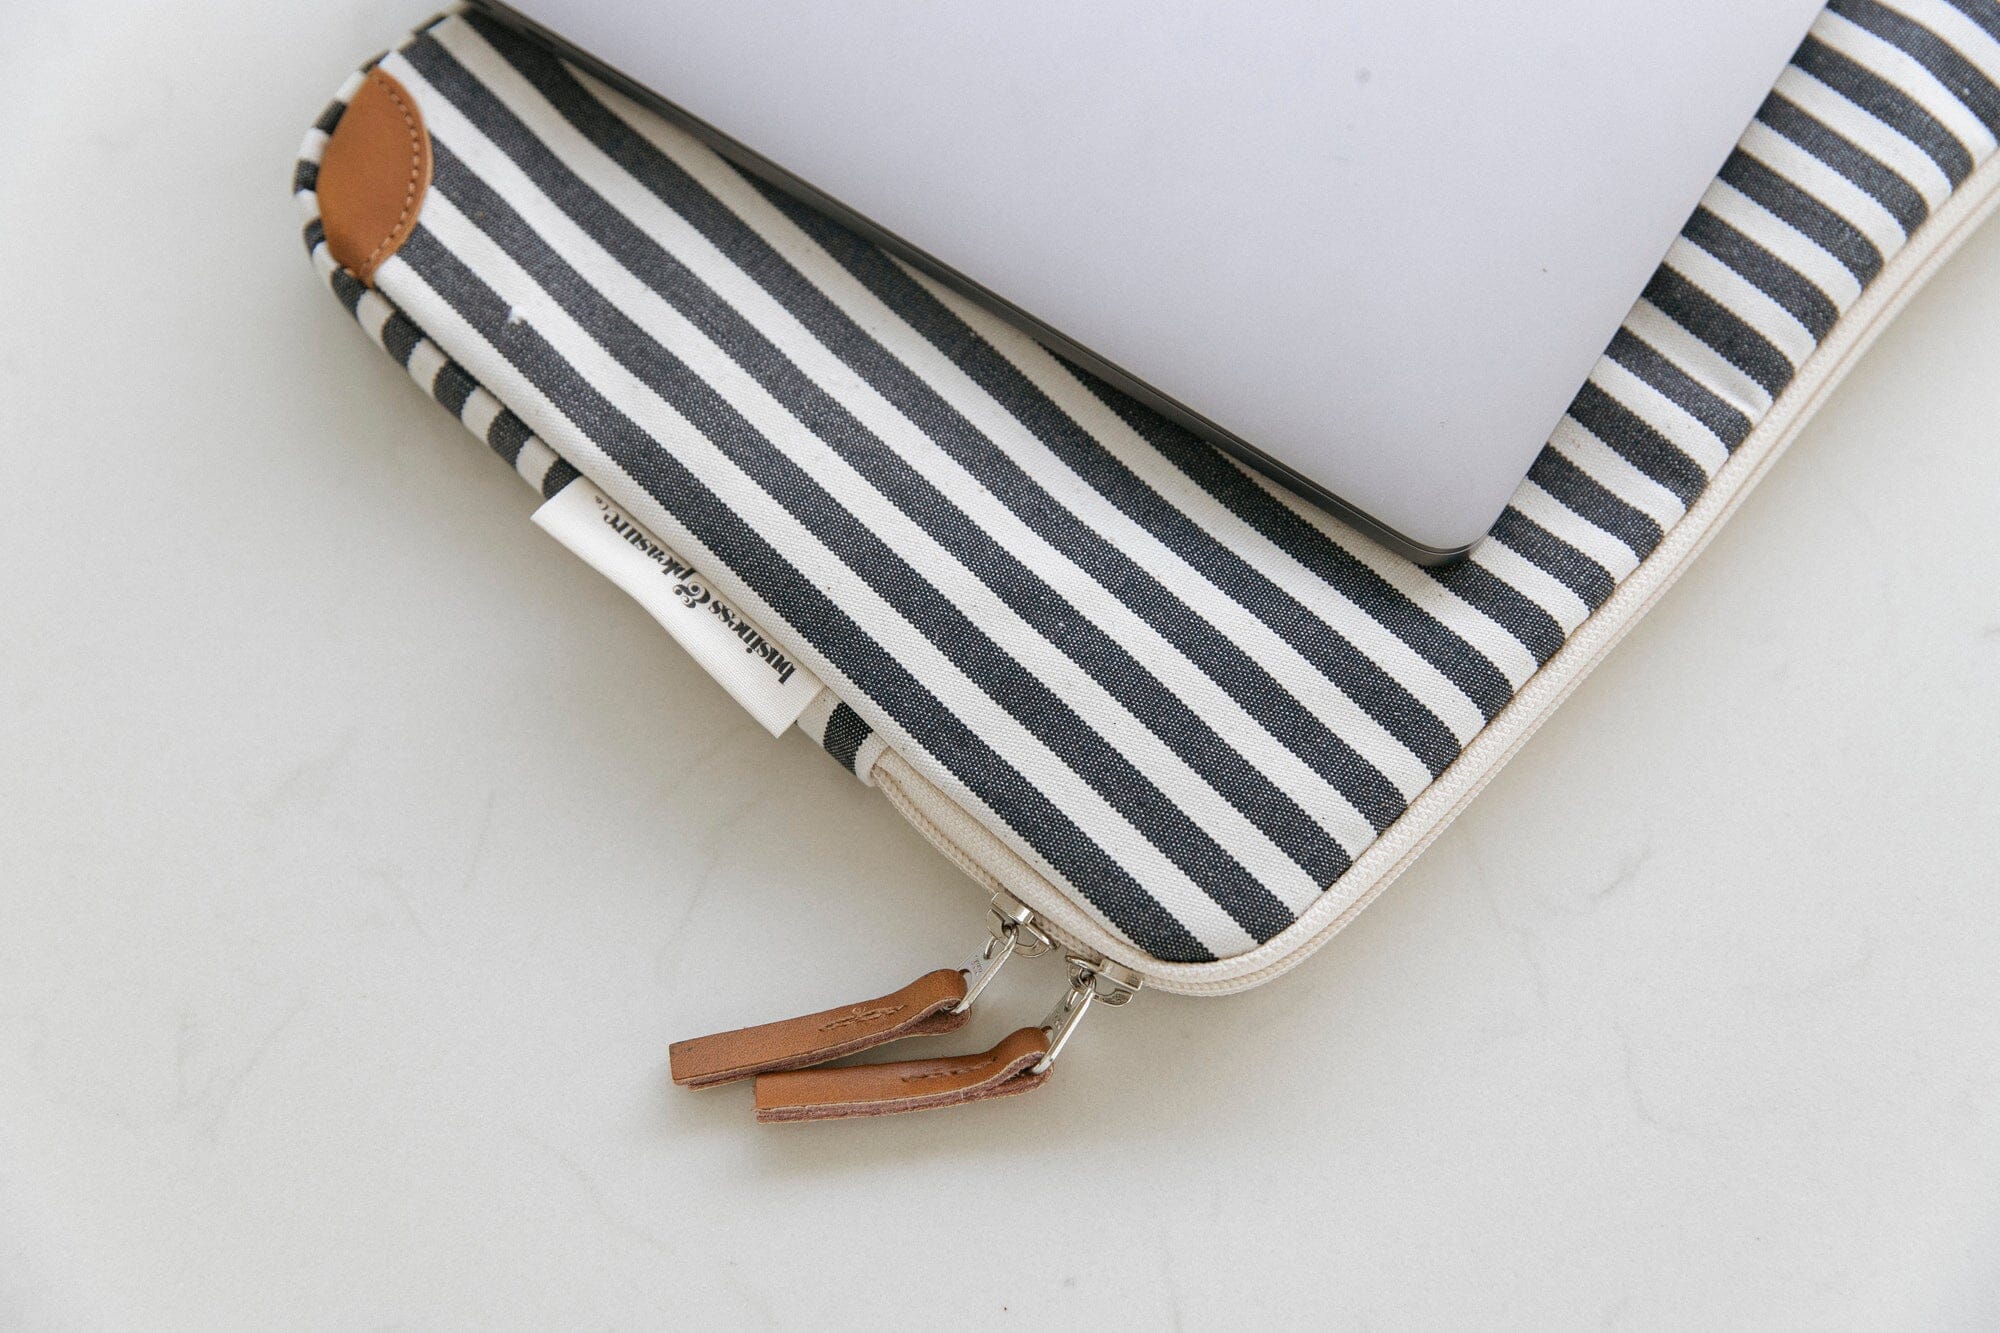 The Laptop Sleeve - Lauren's Navy Stripe